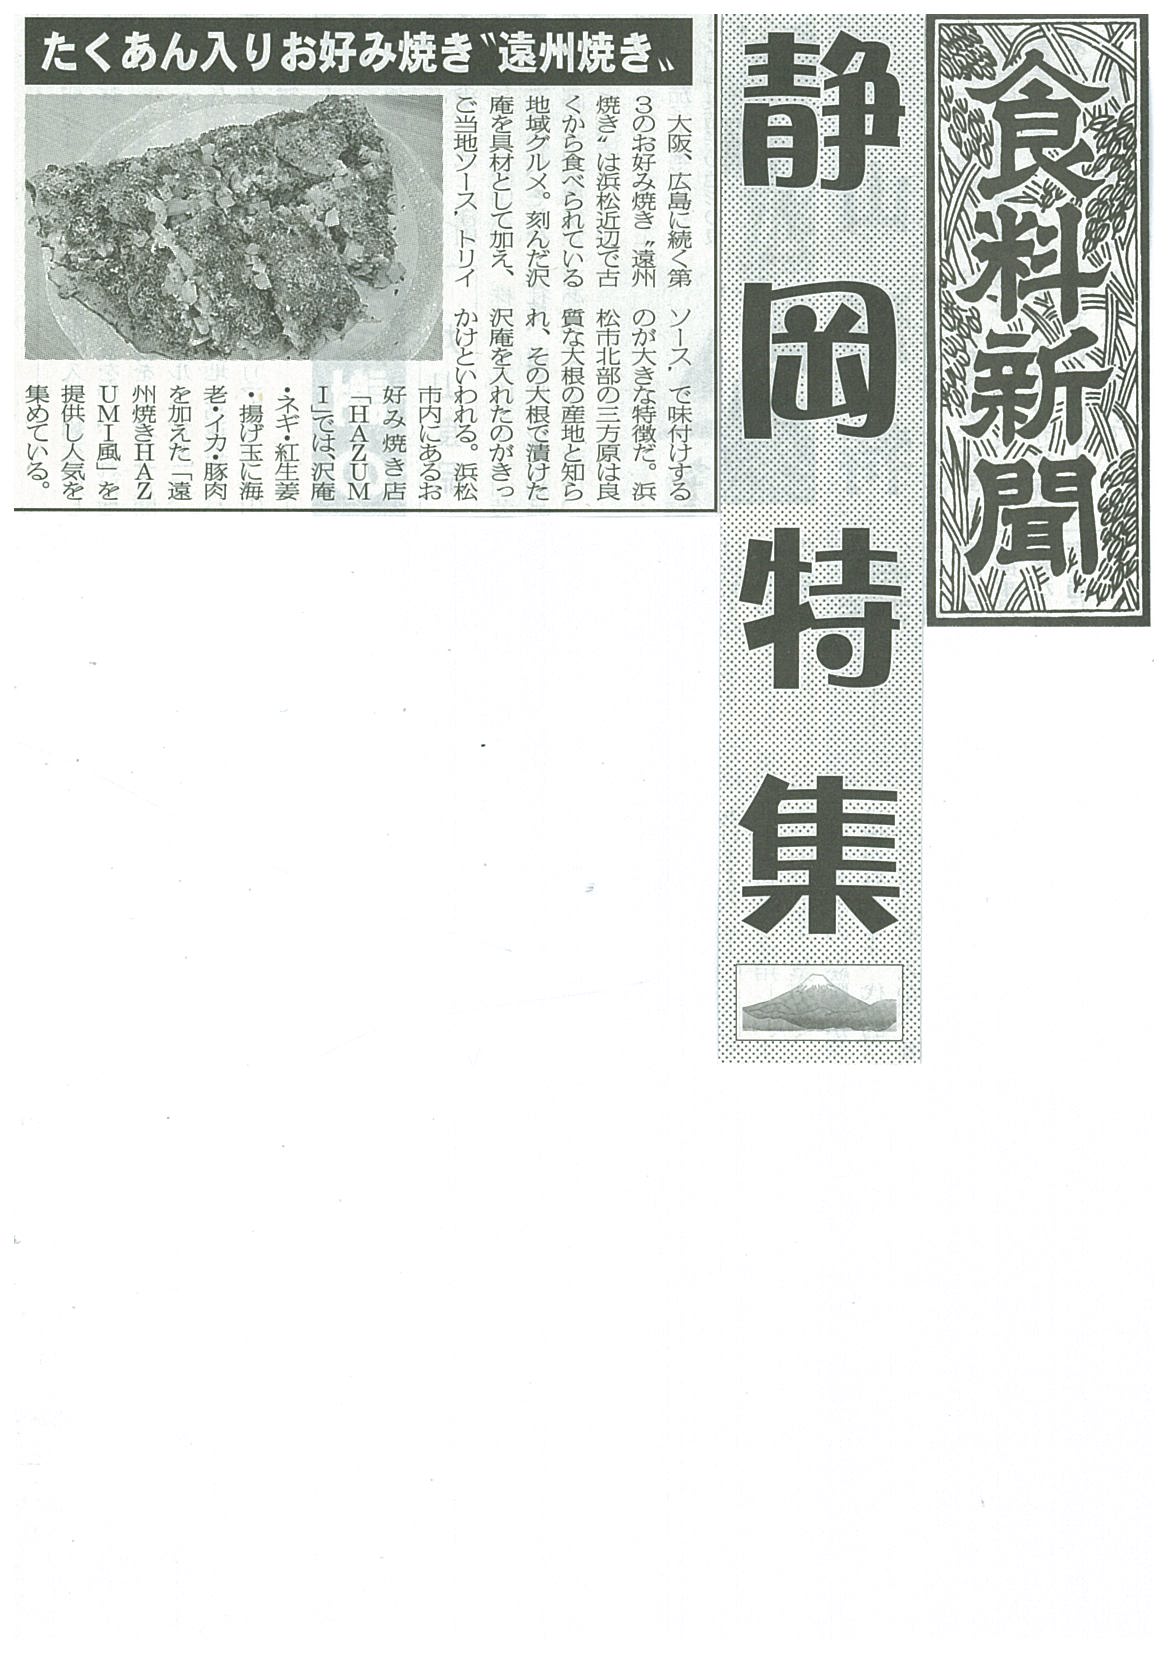 http://www.torii-sauce.jp/media/%E9%A3%9F%E6%96%99%E6%96%B0%E8%81%9E%E3%81%8A%E5%A5%BD%E3%81%BF%E7%84%BC%E3%81%8D.jpg